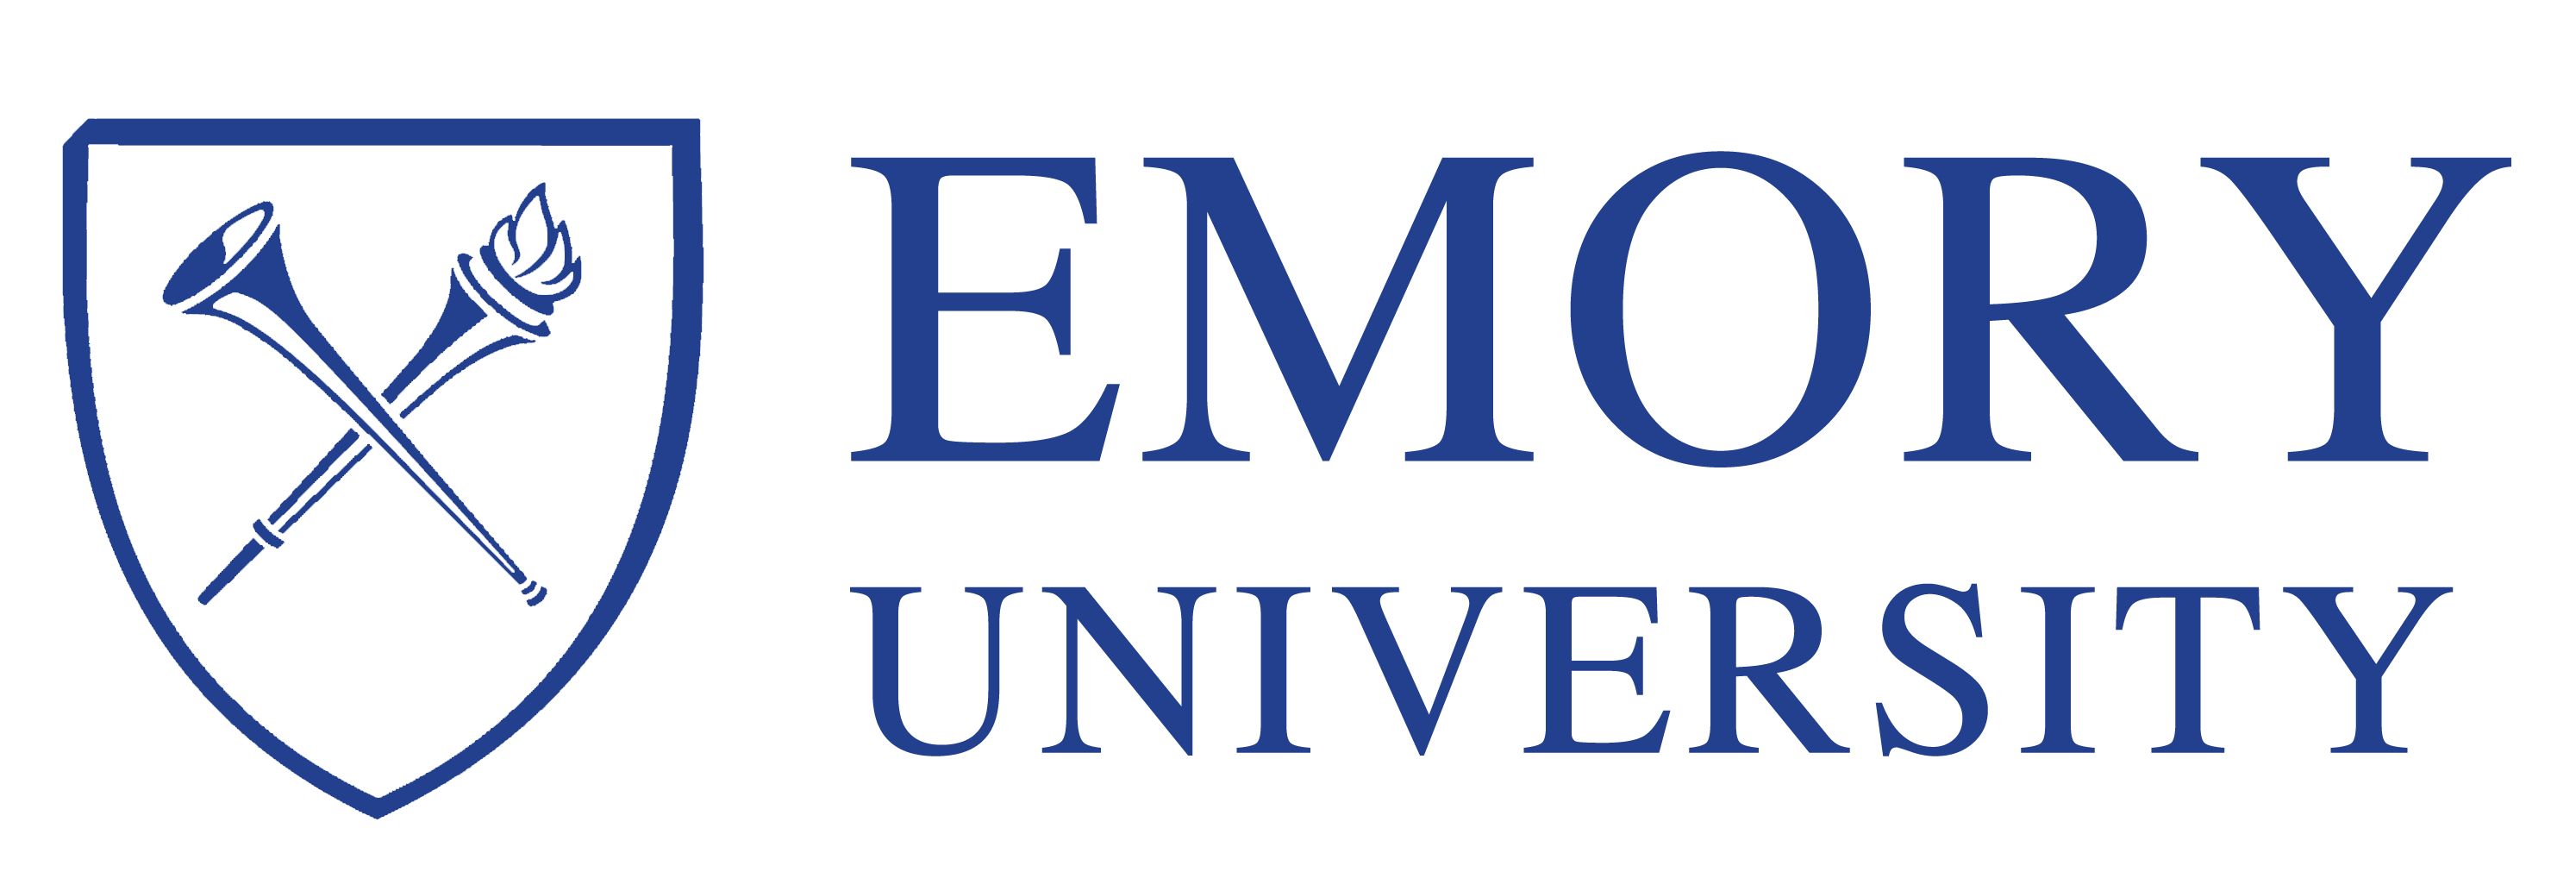 Emory-Univ